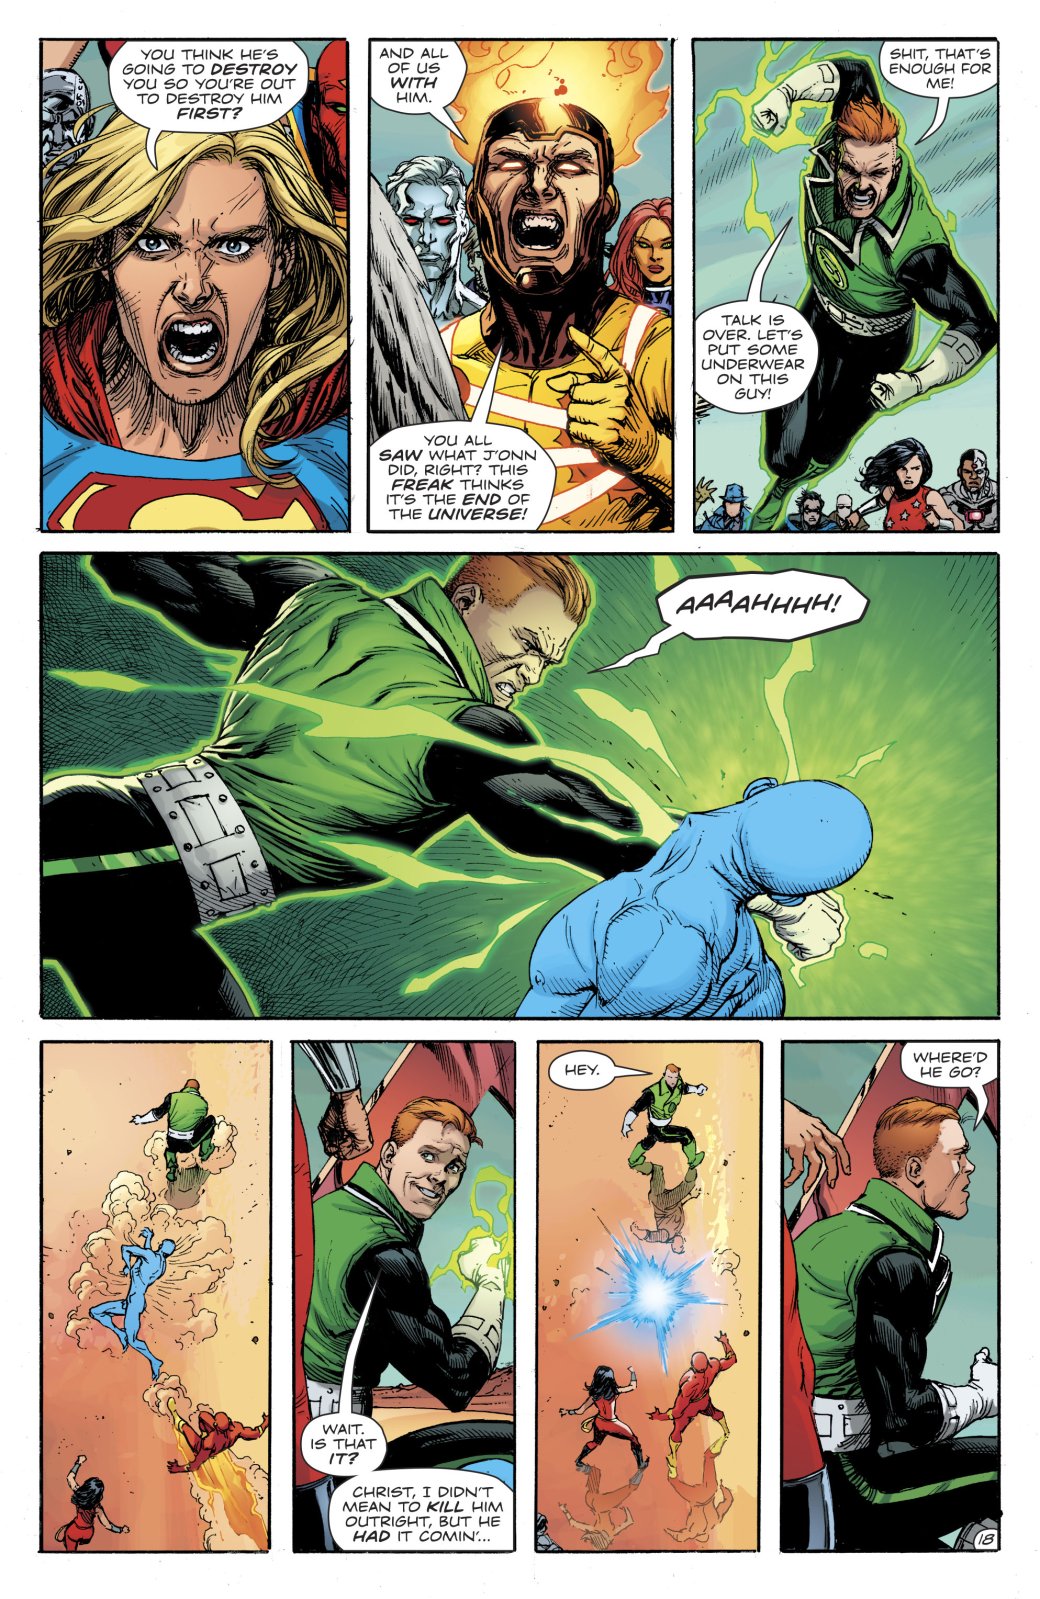 Галерея Кто сильнее: Доктор Манхэттен или супергерои DC? Теперь мы знаем наверняка - 2 фото